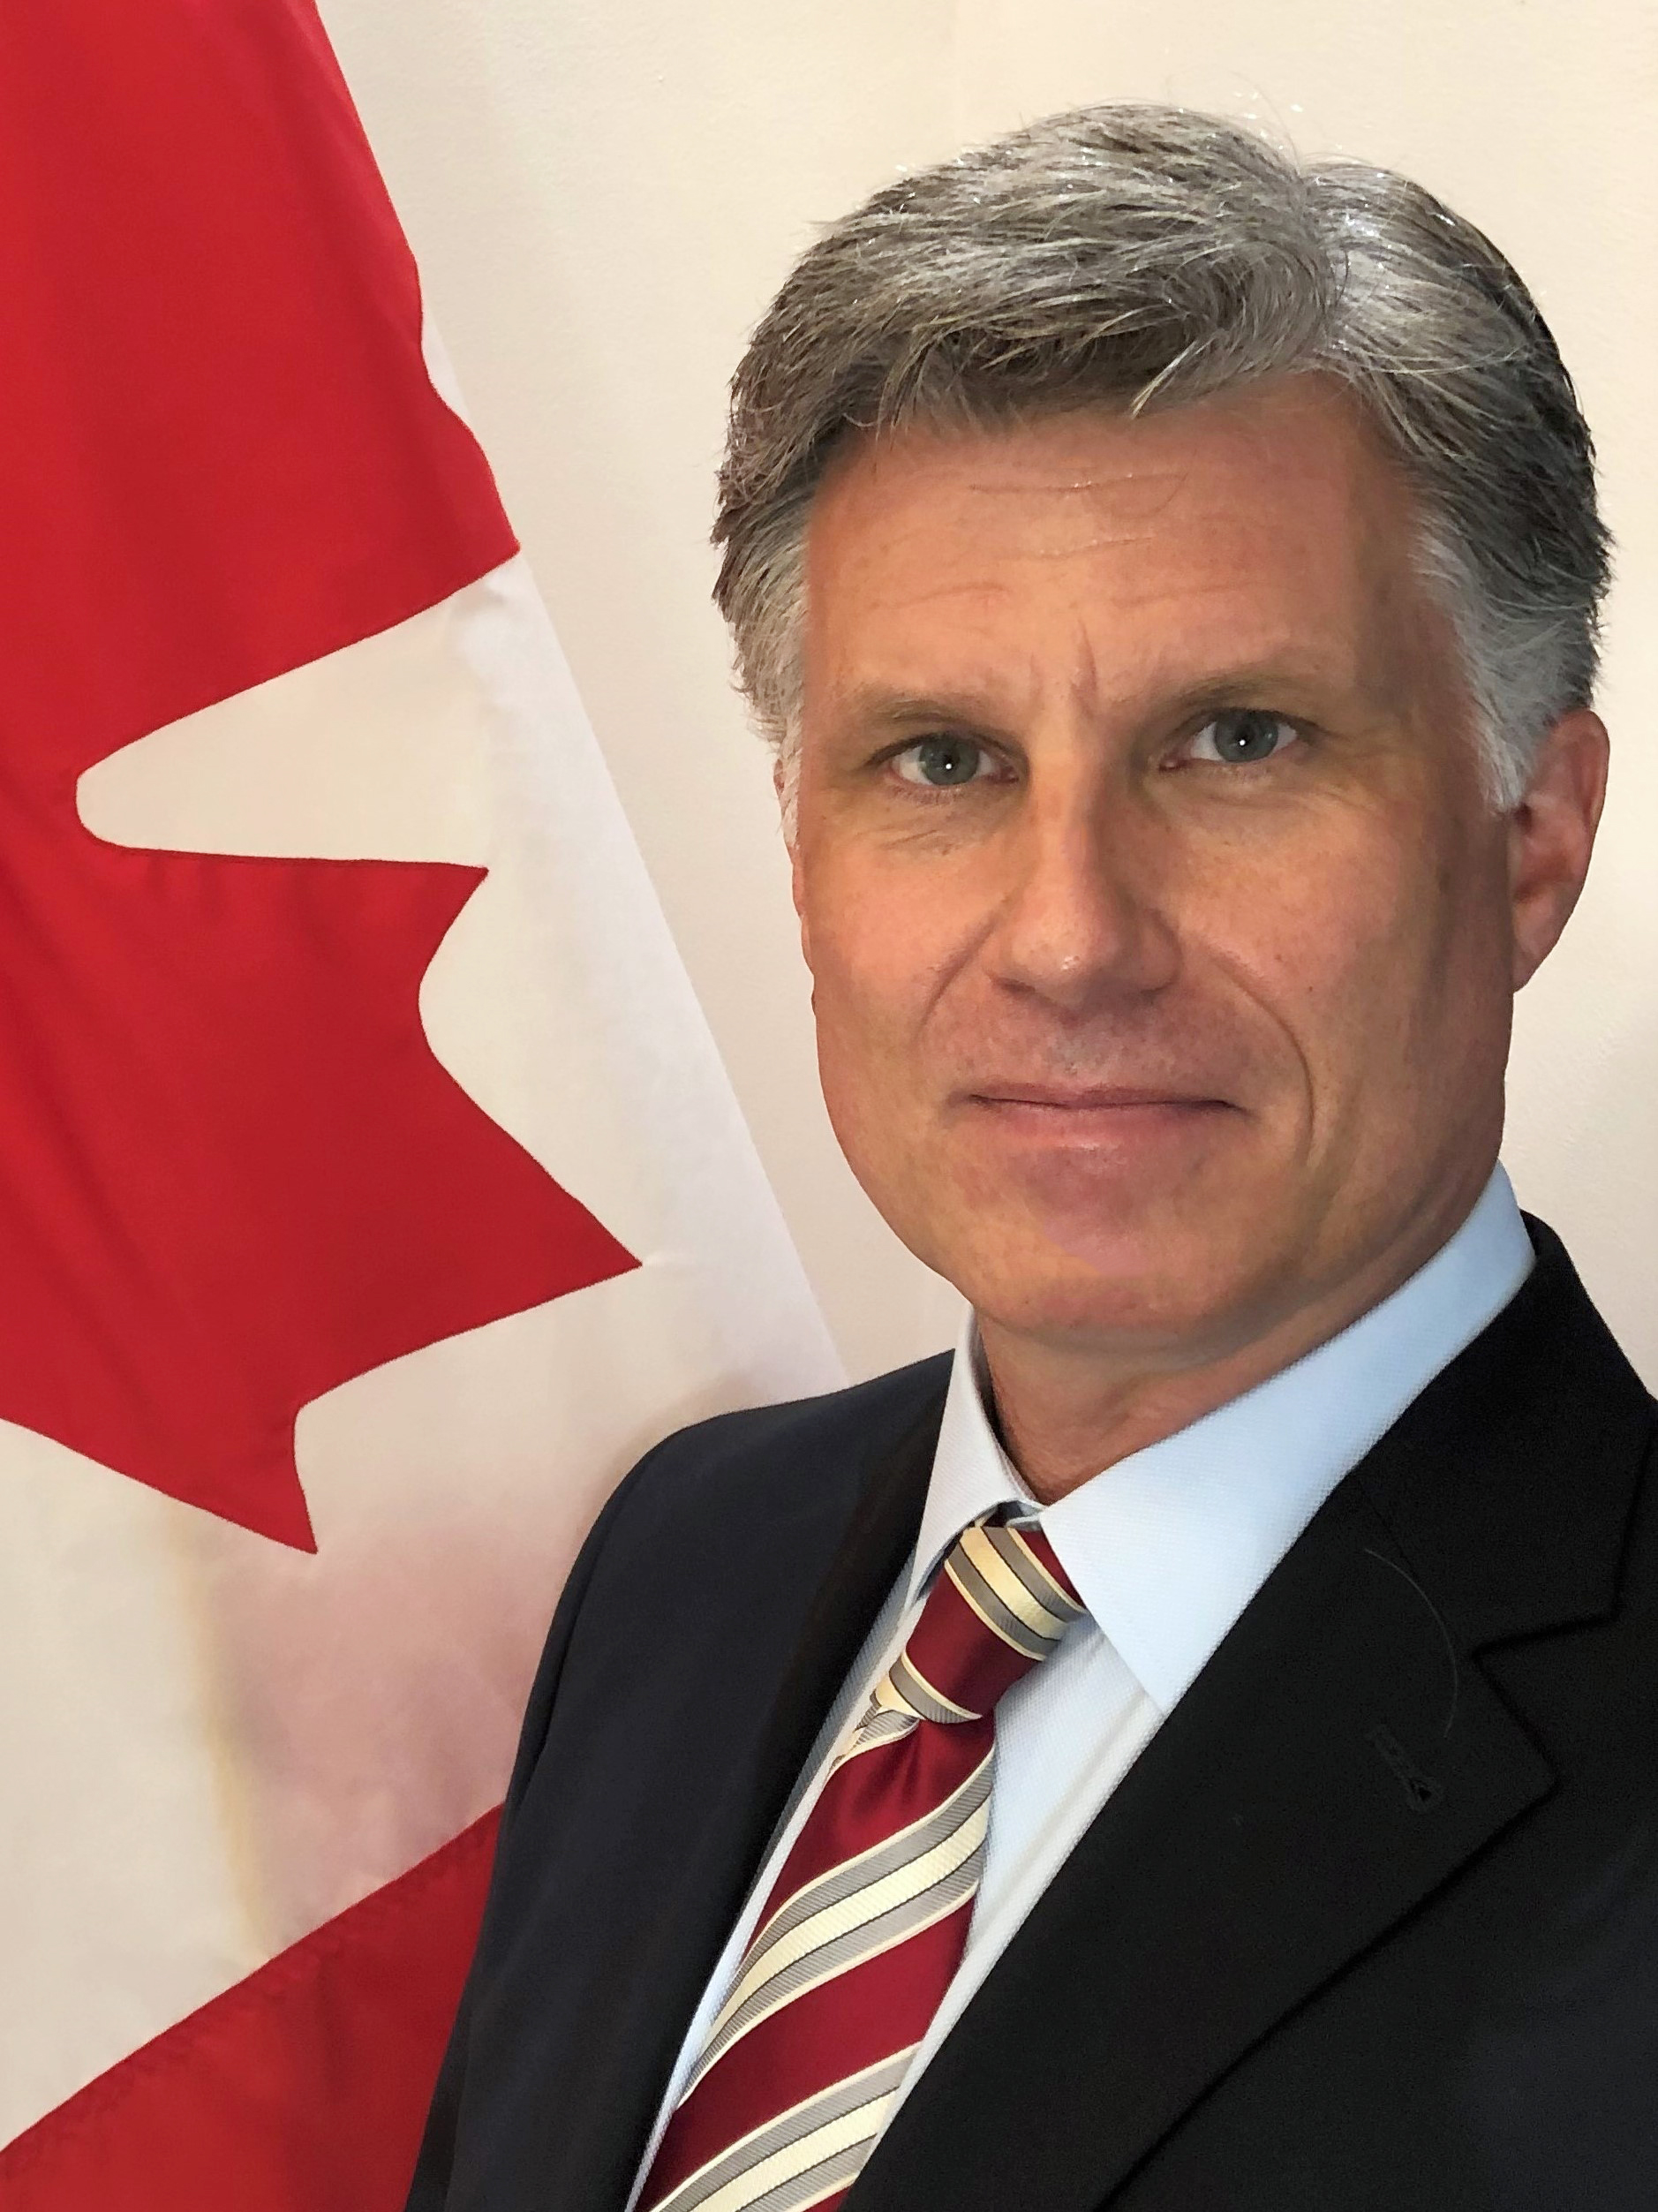 Cameron MacKay, Ambassadeur du Canada auprès de l’Indonésie et le Timor-Leste